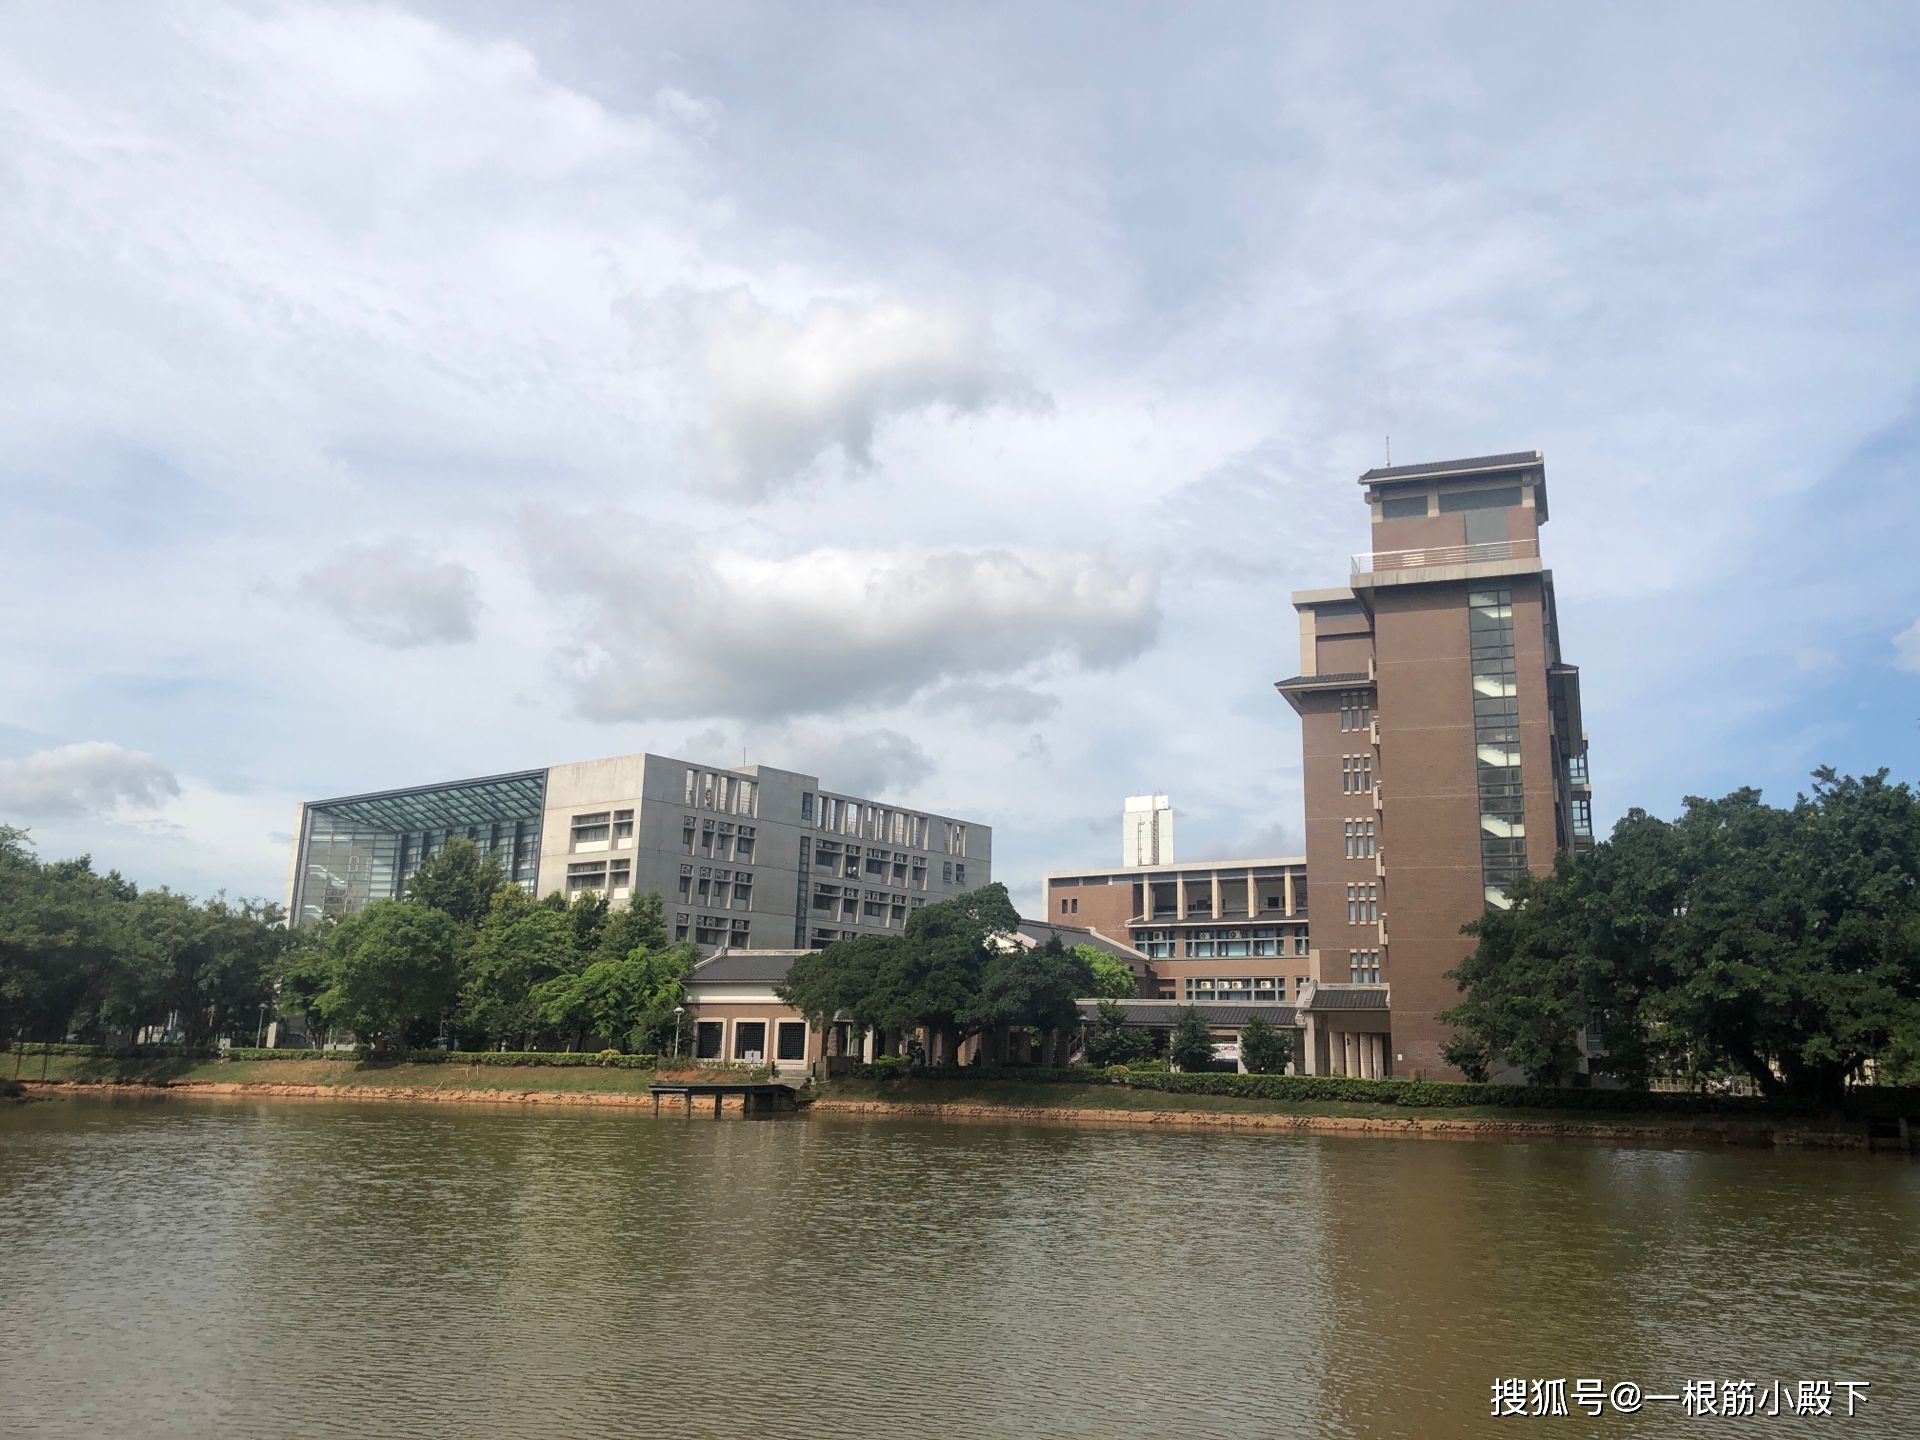 「院校相册」走进校园:台湾中央大学风景实拍图